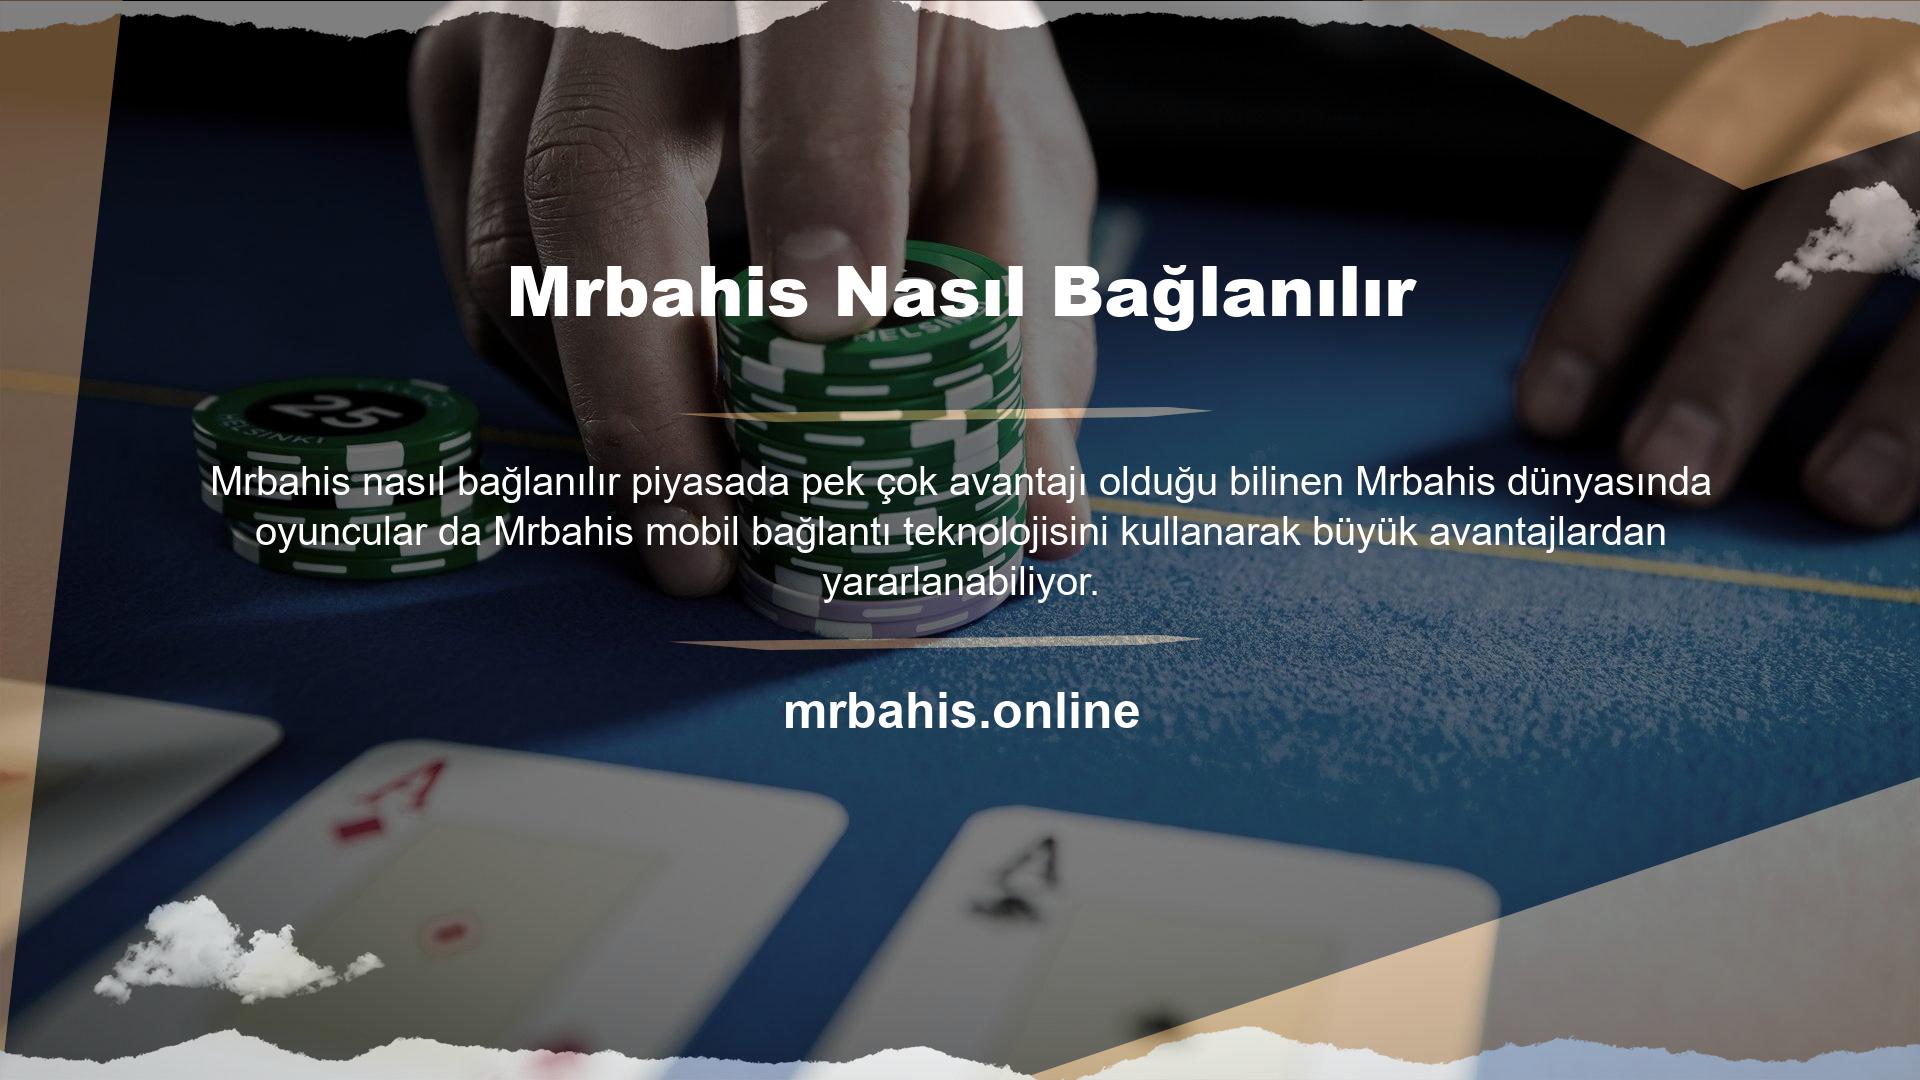 Mrbahis, Türkiye canlı bahis pazarındaki en önemli web sitelerinden biridir ve Türkiye'deki popülaritesi nedeniyle güvenilirlik açısından başarı elde etmiştir